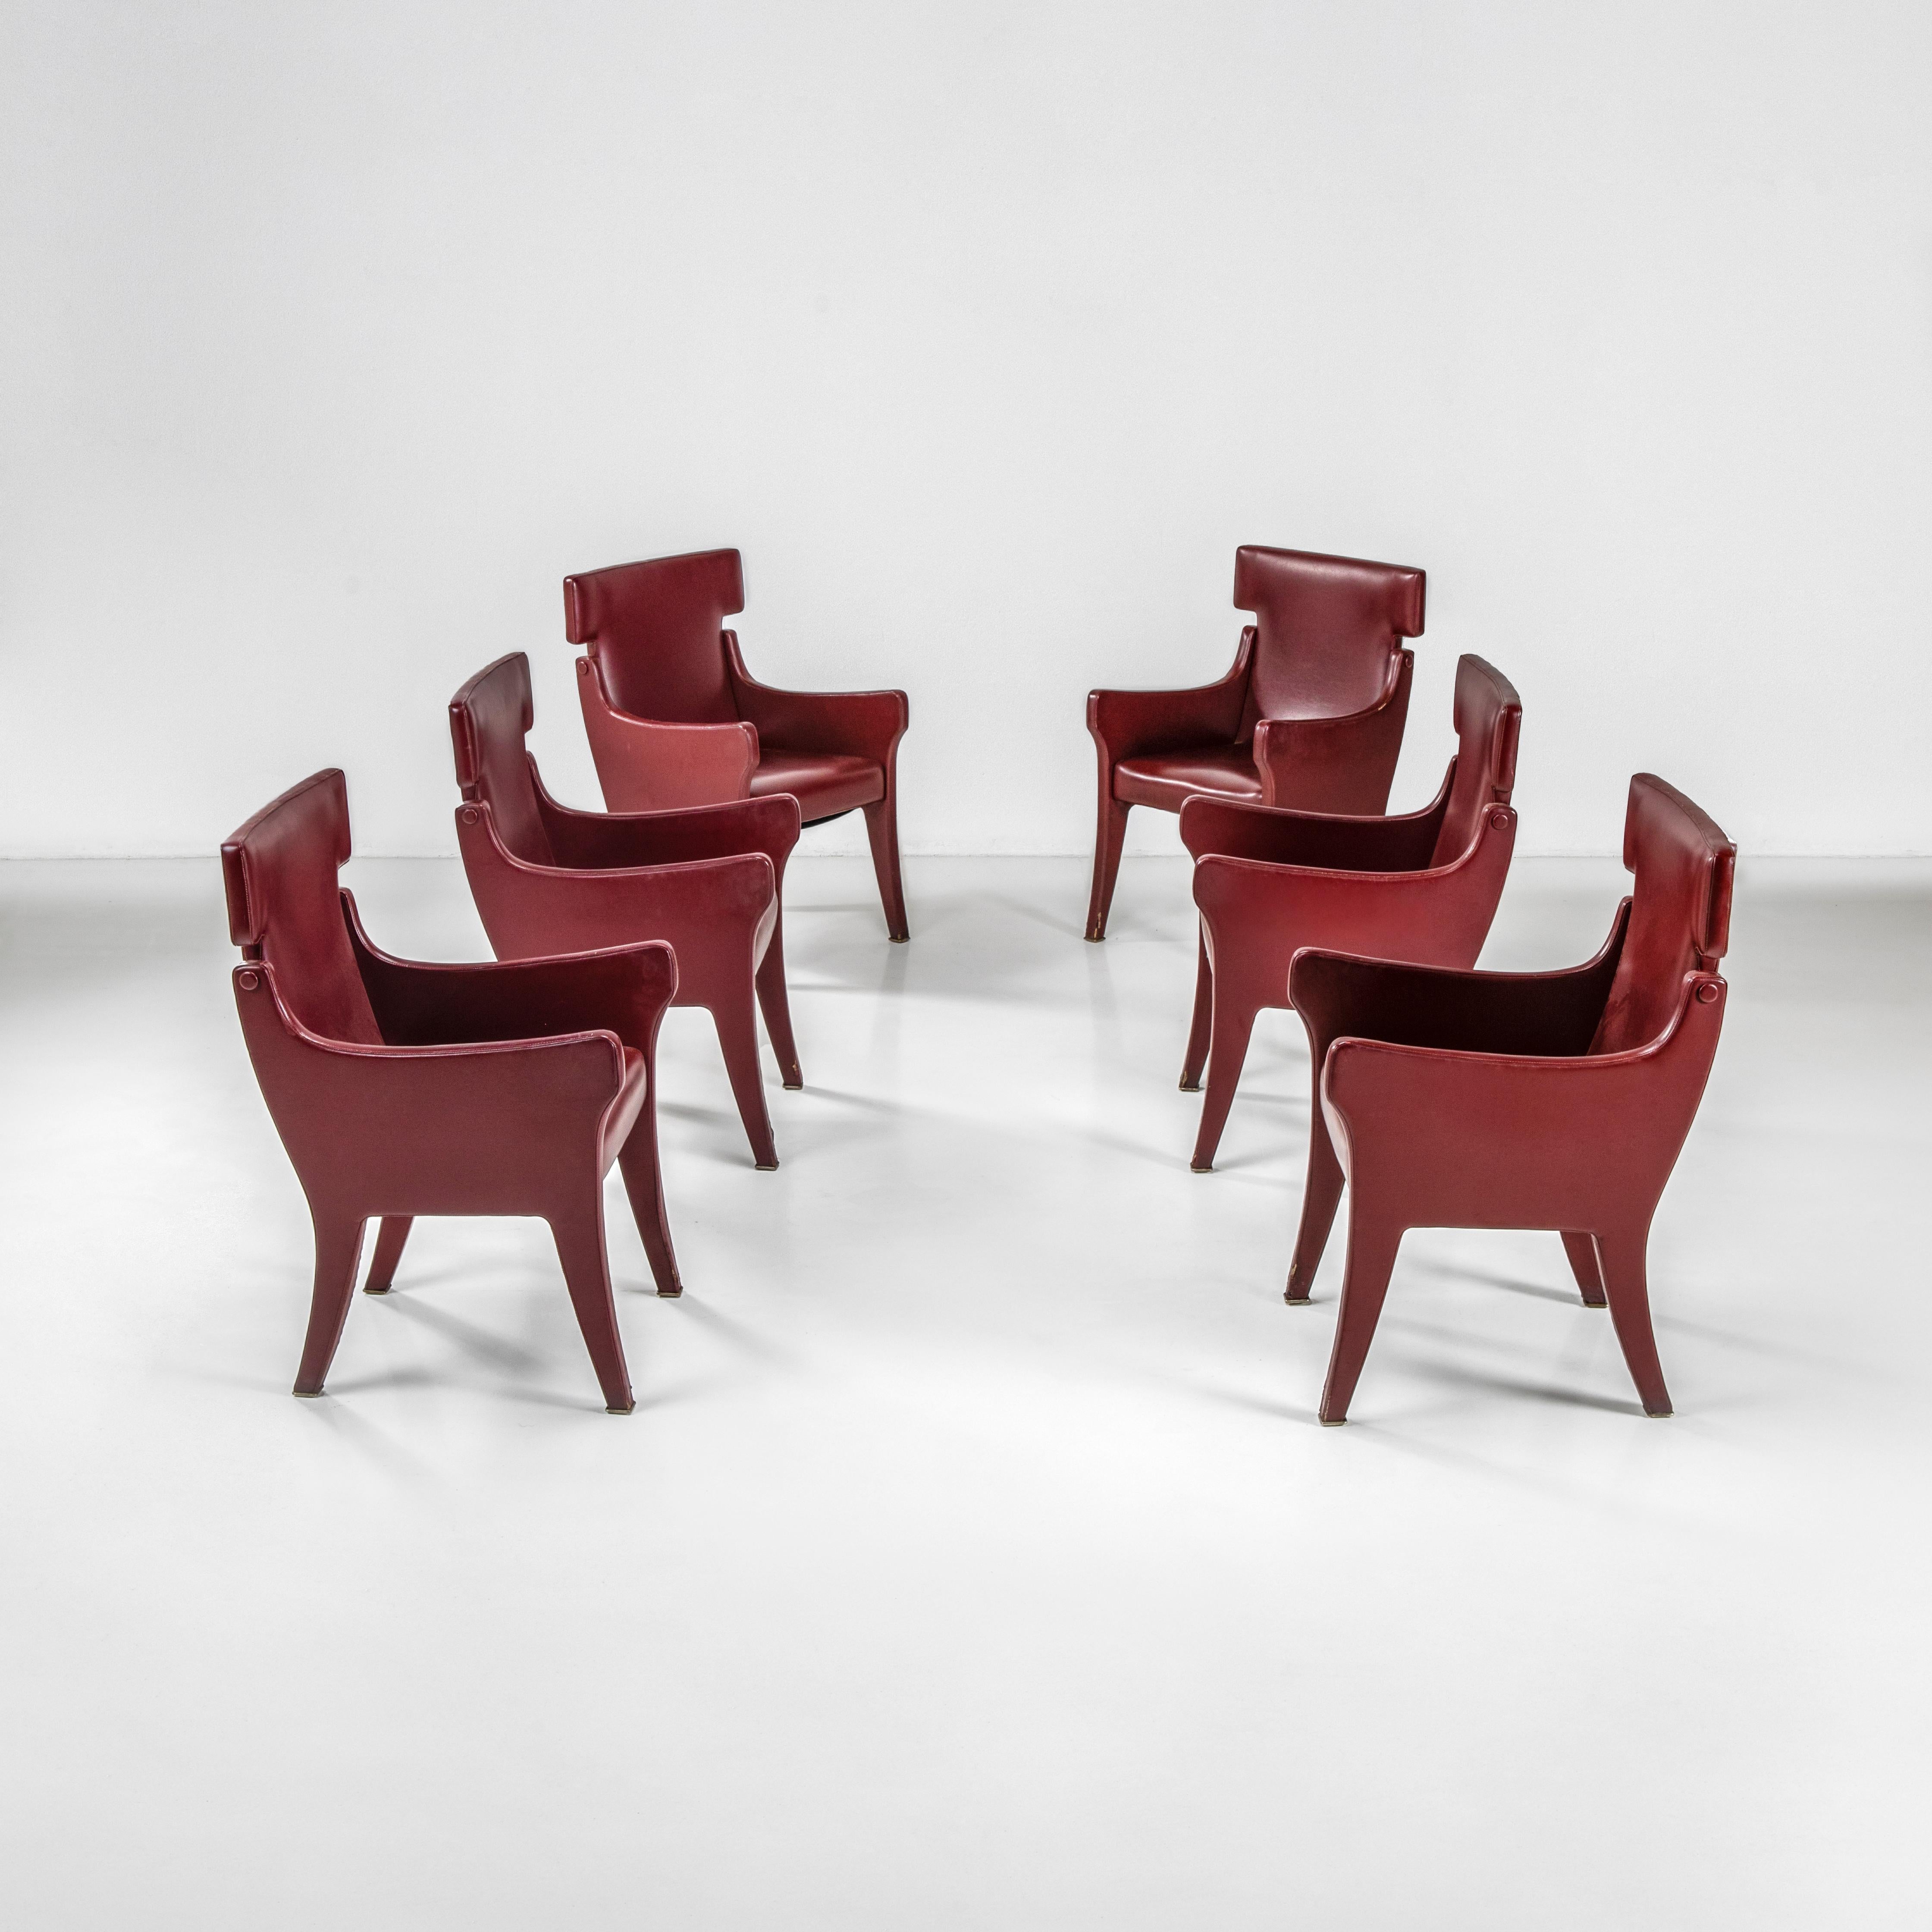 Diese sechs seltenen gepolsterten Sessel des Modells P10 sind eine elegante und dekorative Kreation von Ignazio Gardella, einem der Meister des italienischen Designs des 20. Die sechs Sessel sind mit Skai gepolstert, einem in jenen Jahren weit